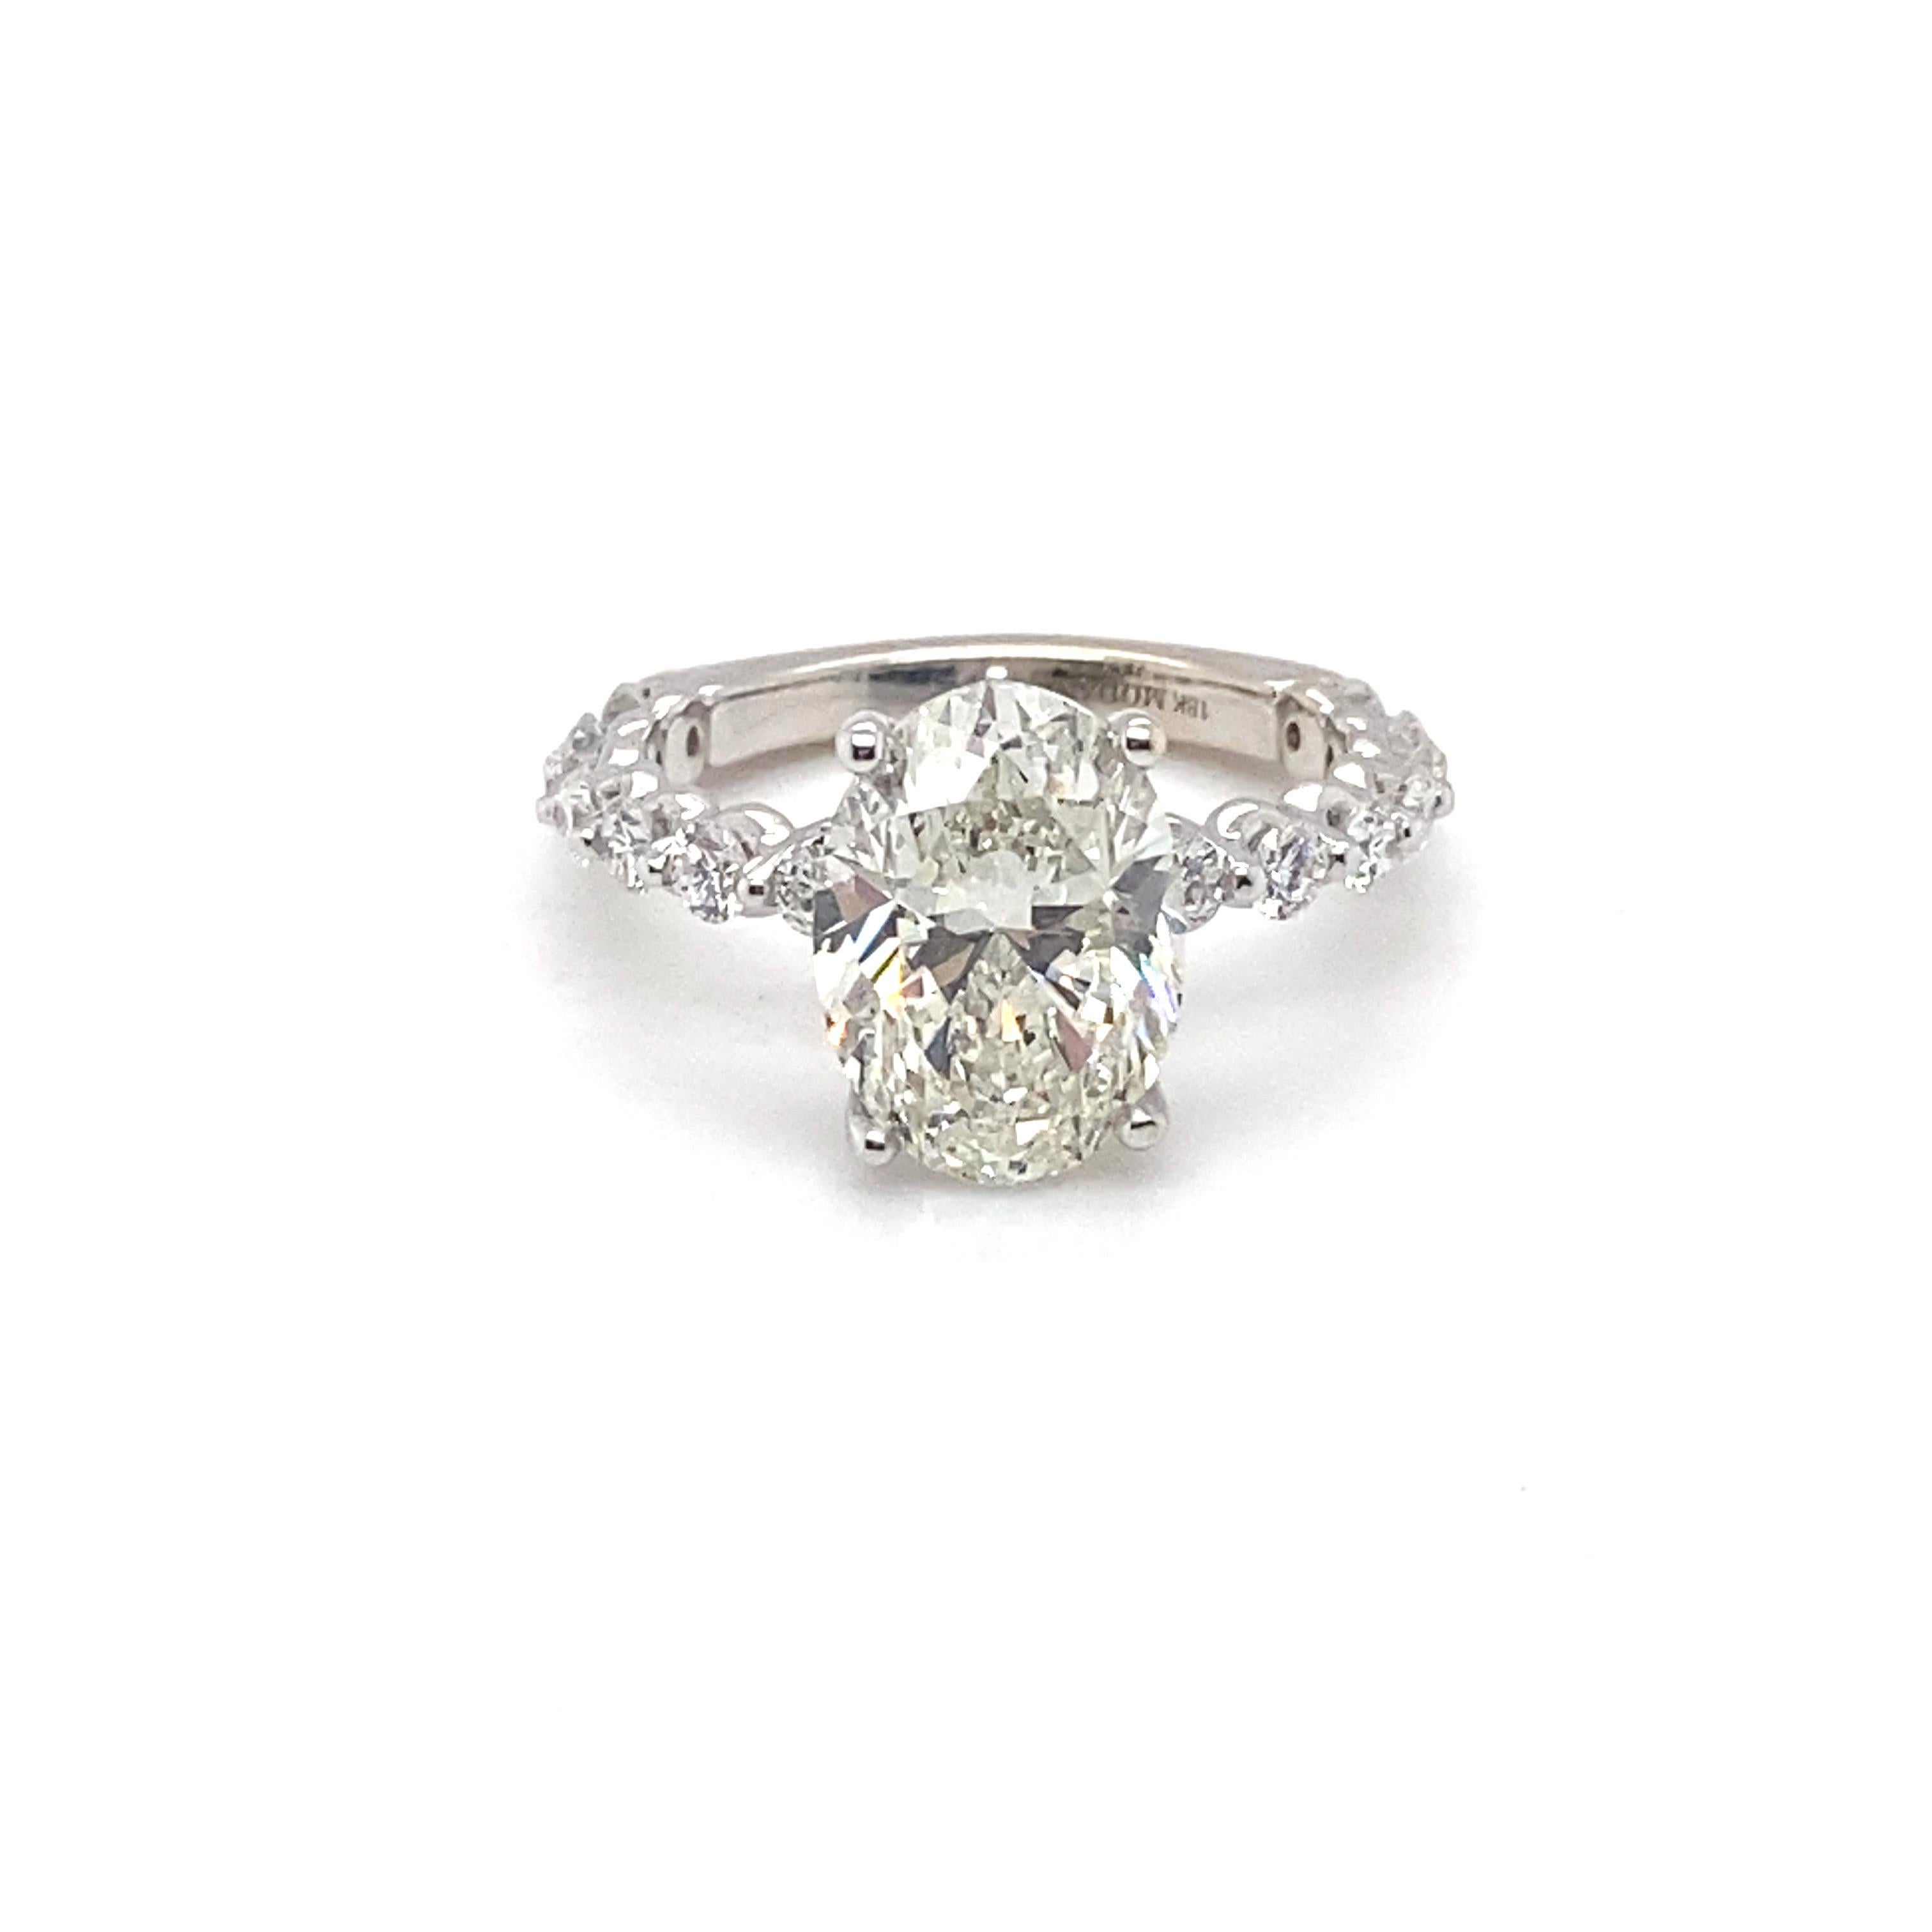 Dieser prächtige Ring rühmt sich eines GIA-zertifizierten ovalen Diamanten von 4,03 Karat, der in Zacken mit Akzentdiamanten auf dem Band gefasst ist. Jedes Detail wurde bedacht und verfeinert, um Ihren Erwartungen gerecht zu werden und ein Erbstück